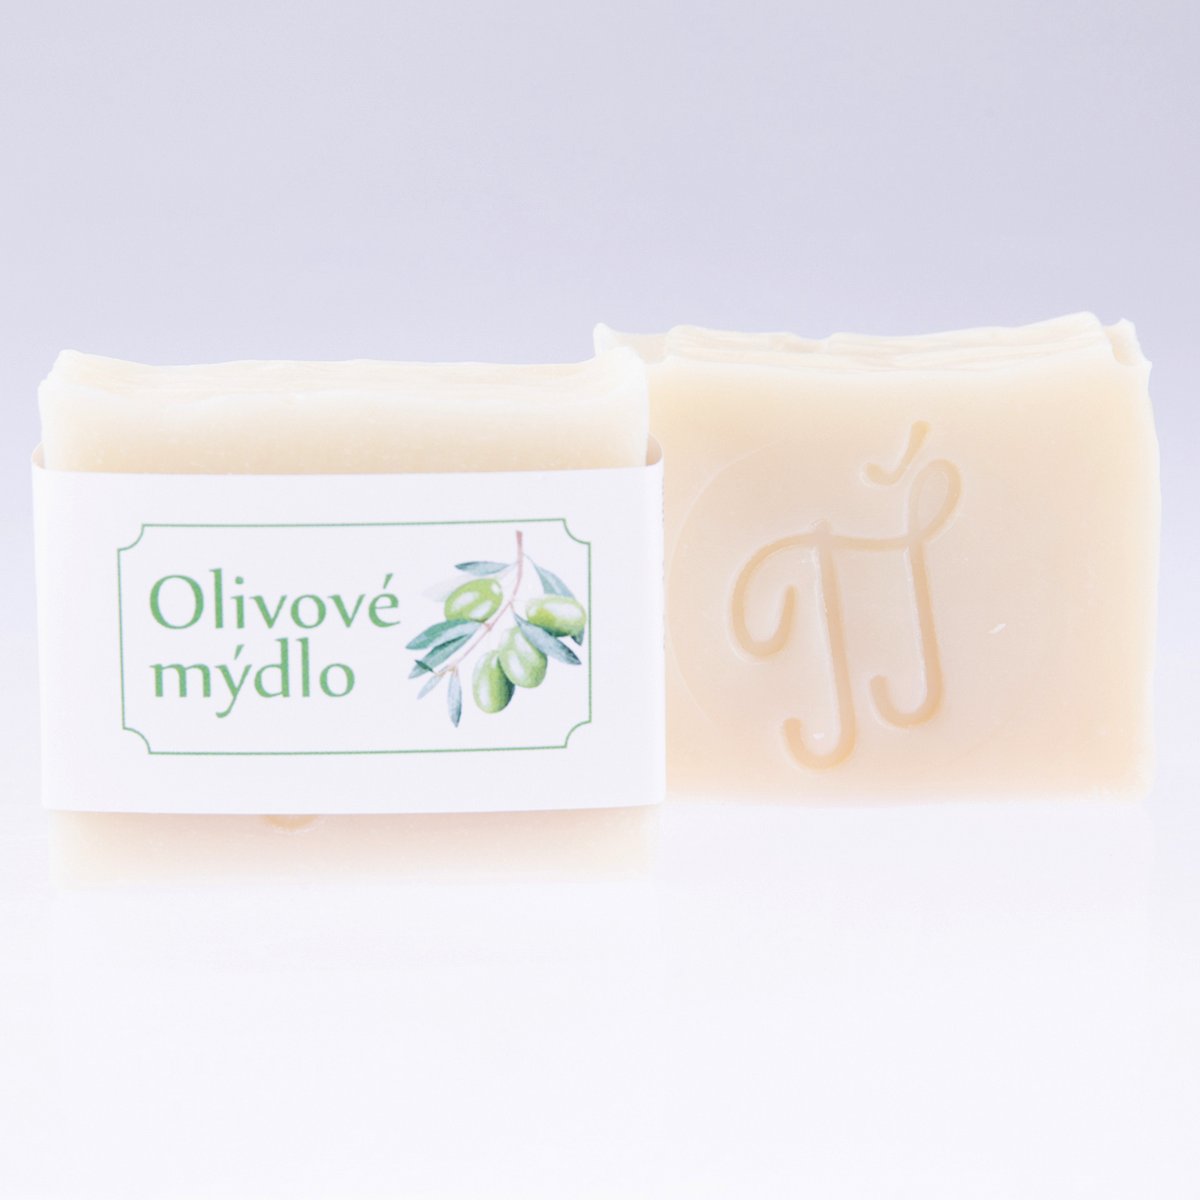 české mýdlo olivové - výrobce Tamy